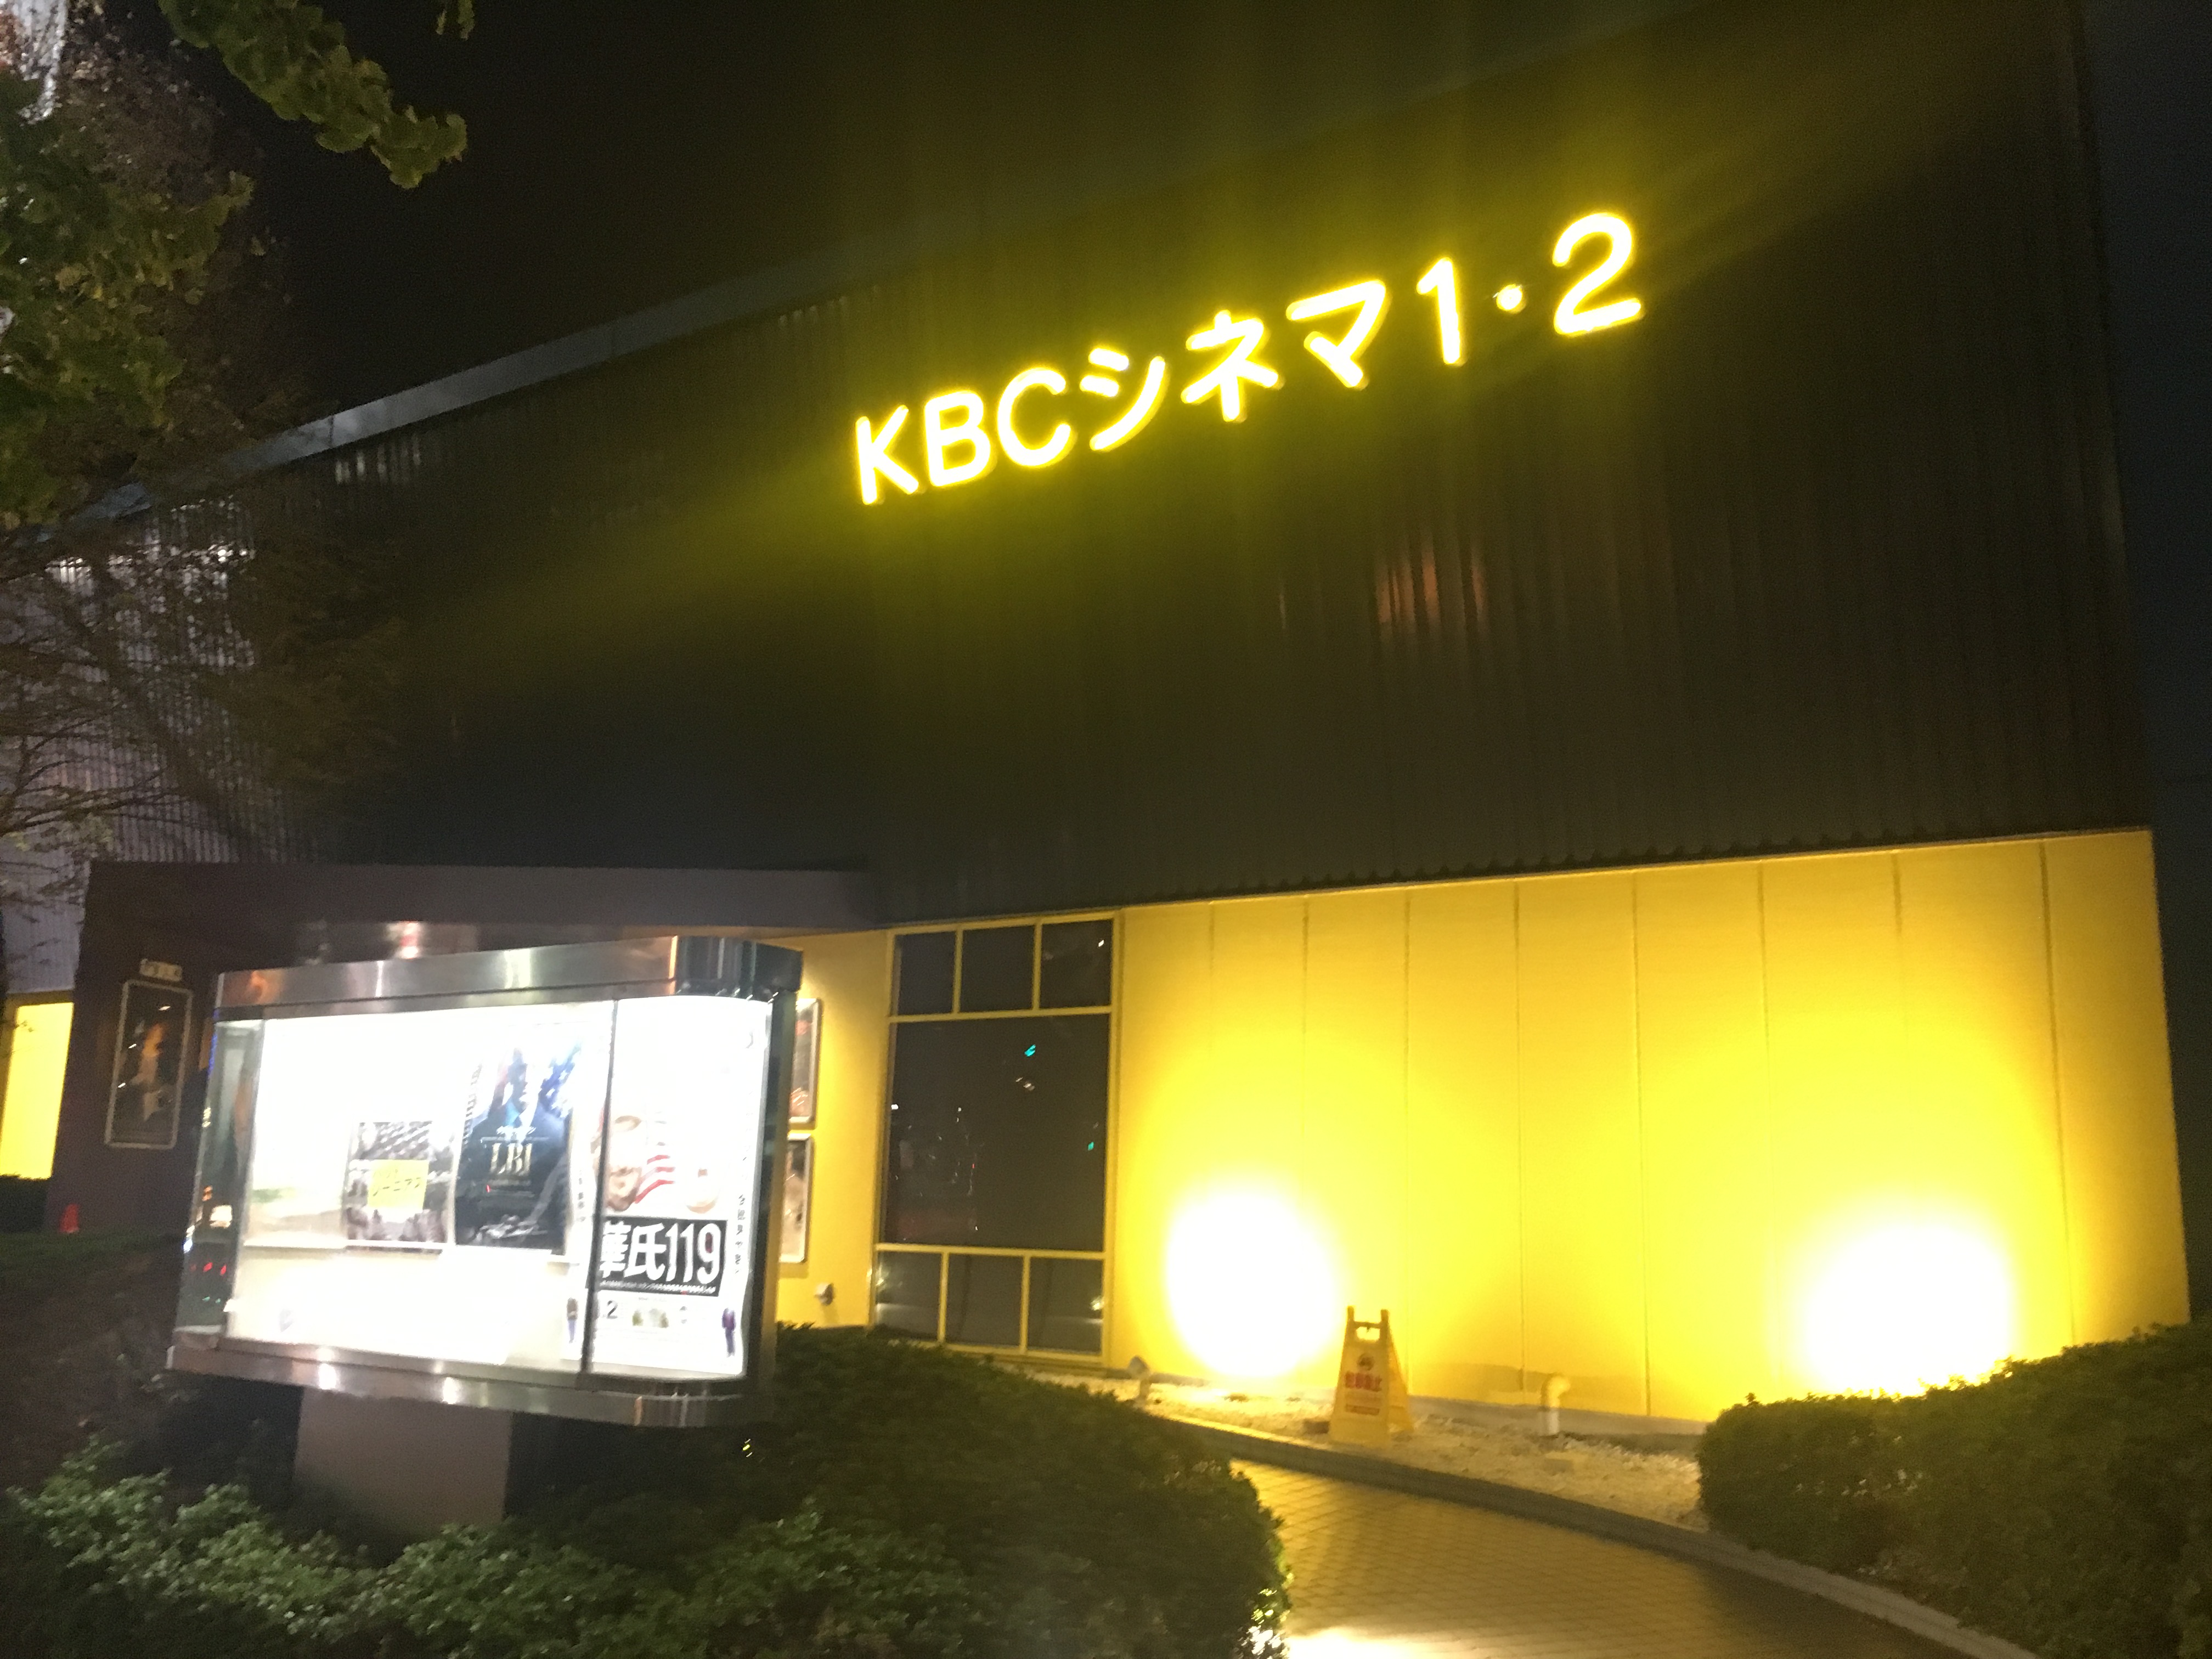 上映スケジュール Kbcシネマ1 2